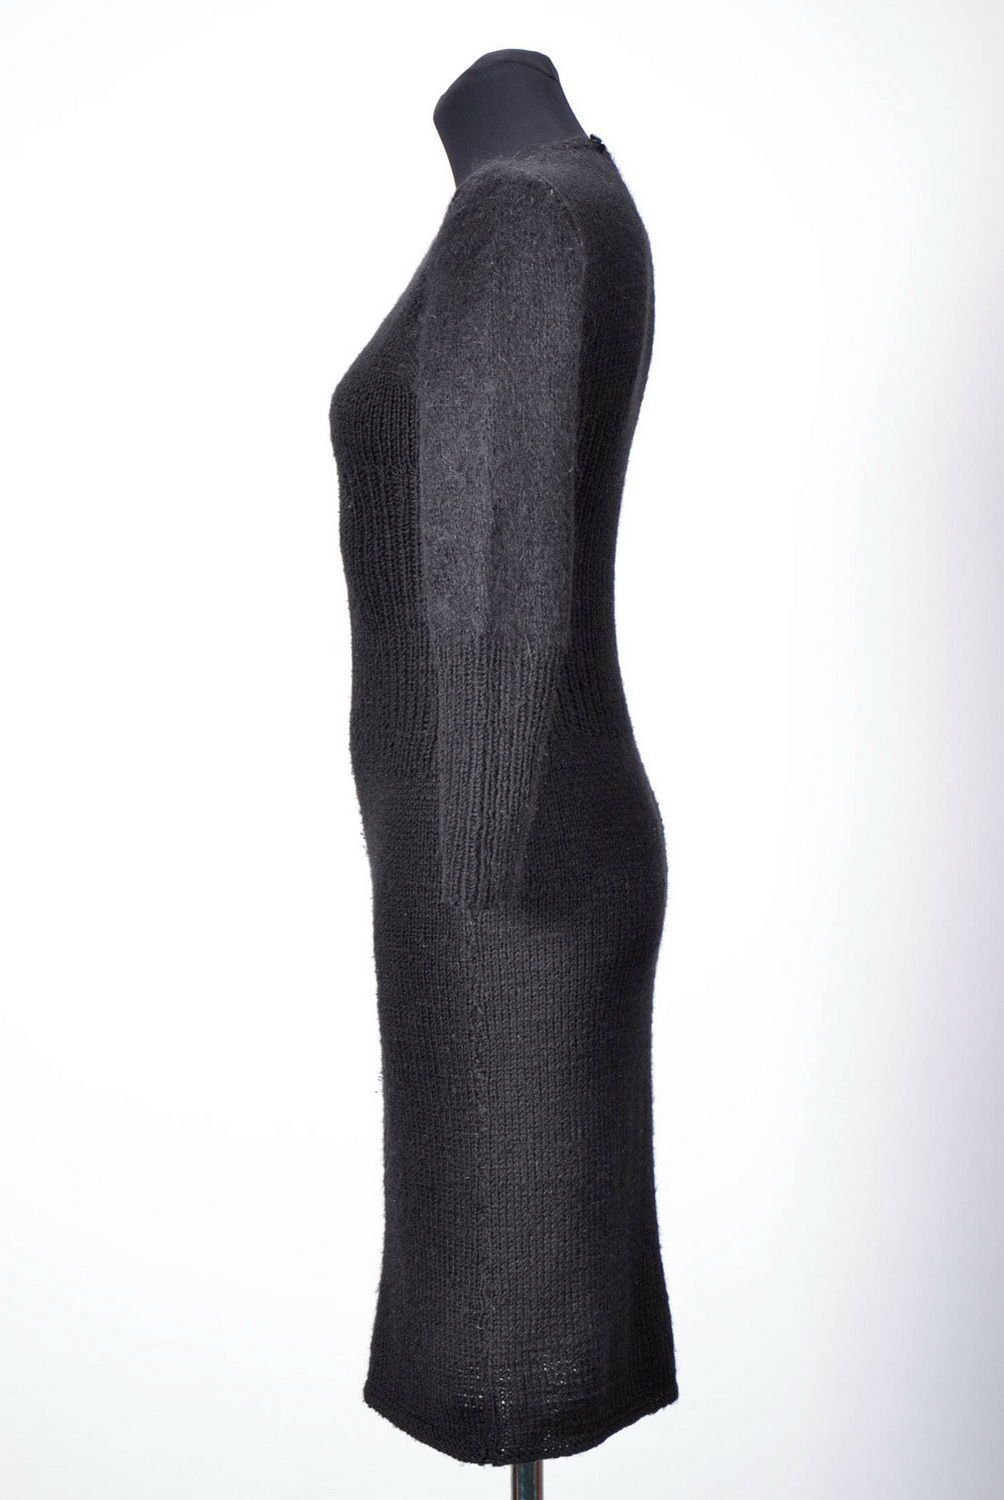 Robe tricotée en laine noire faite main photo 2